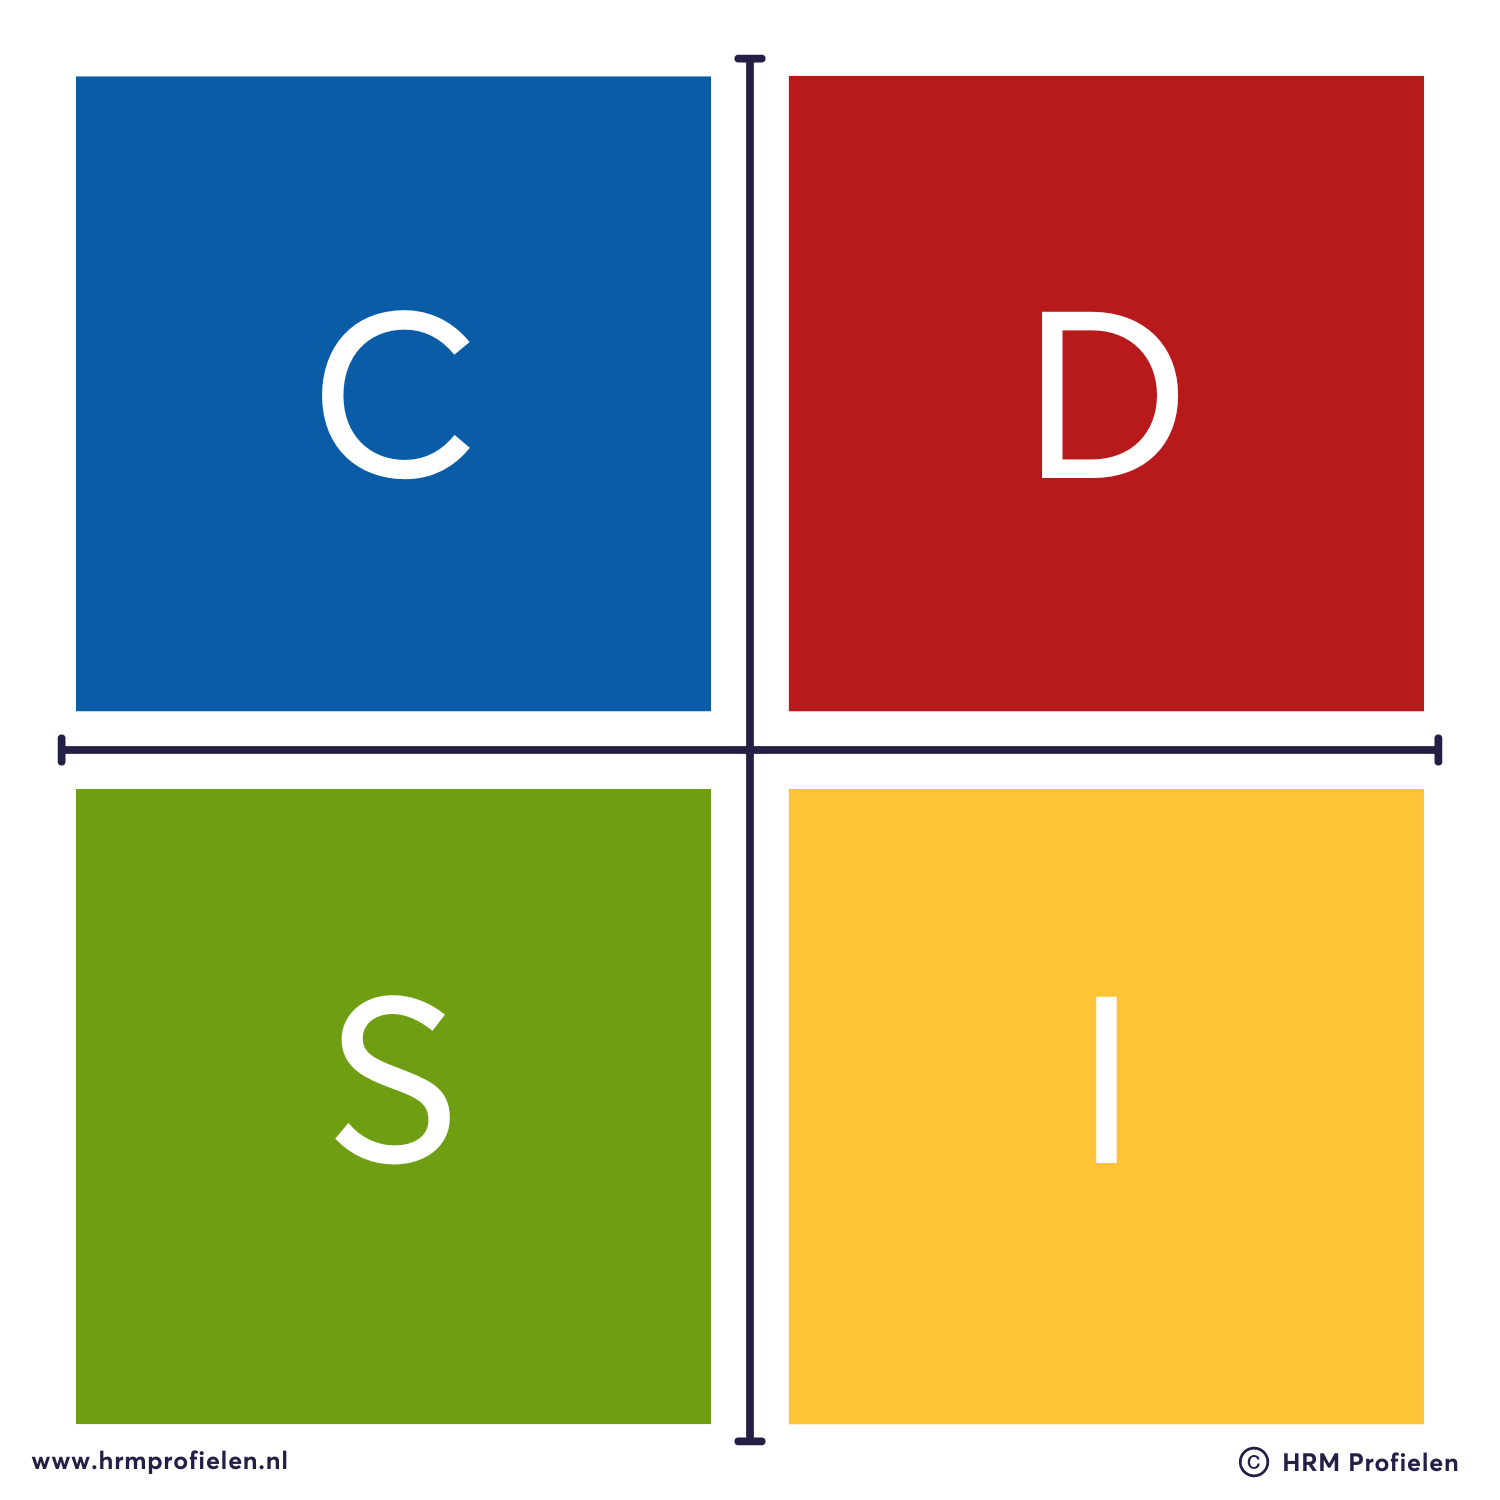 Afbeelding over DISC met vier stijlen dominant, invloed, stabiliteit en conformisme.